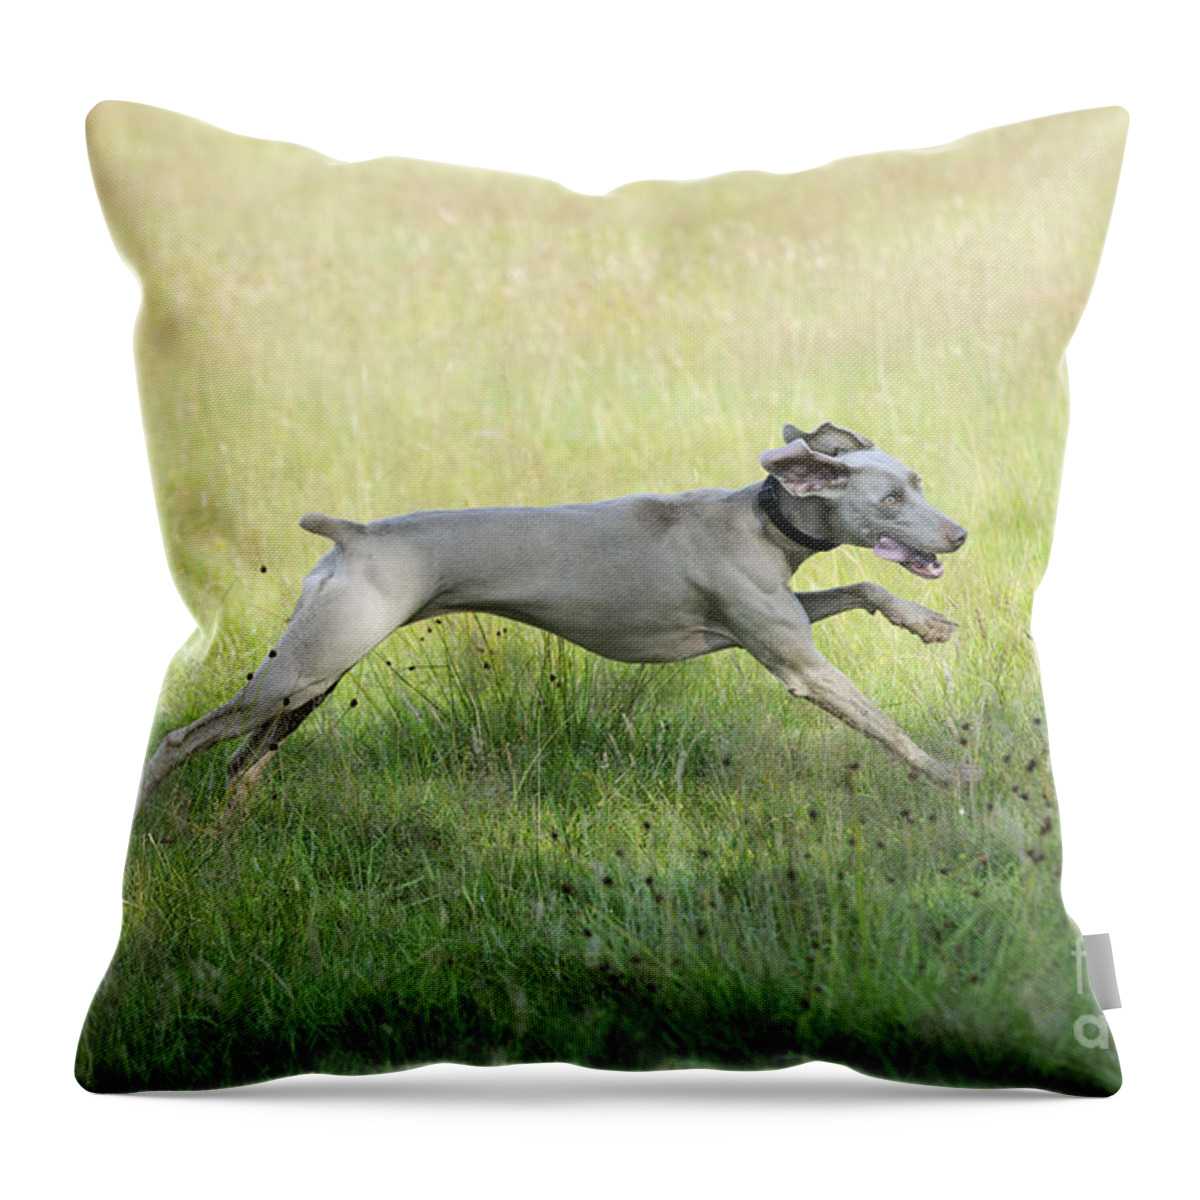 Weimaraner Throw Pillow featuring the photograph Weimaraner Dog Running by John Daniels